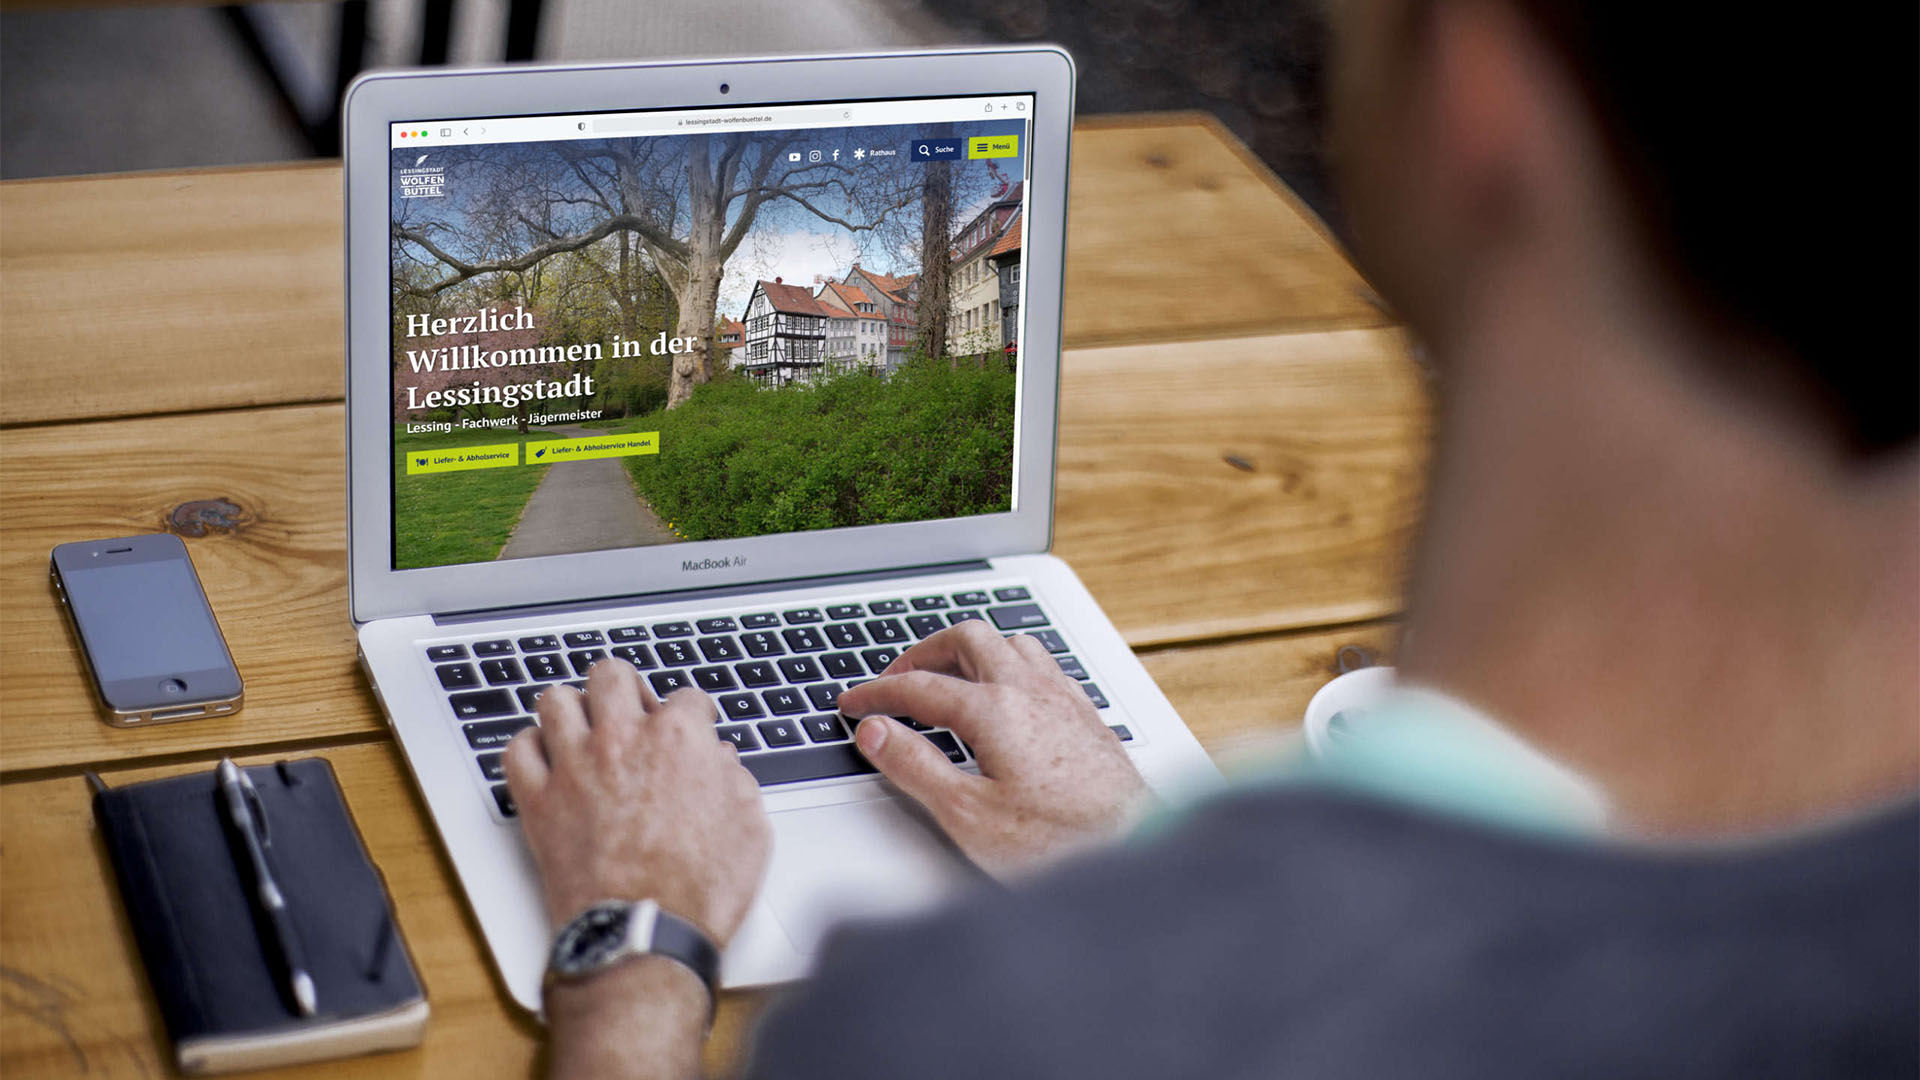 Ein Mann sitzt vor einem Laptop, auf dem die Internetseite der Lessingstadt Wolfenbüttel zu erkennen ist.